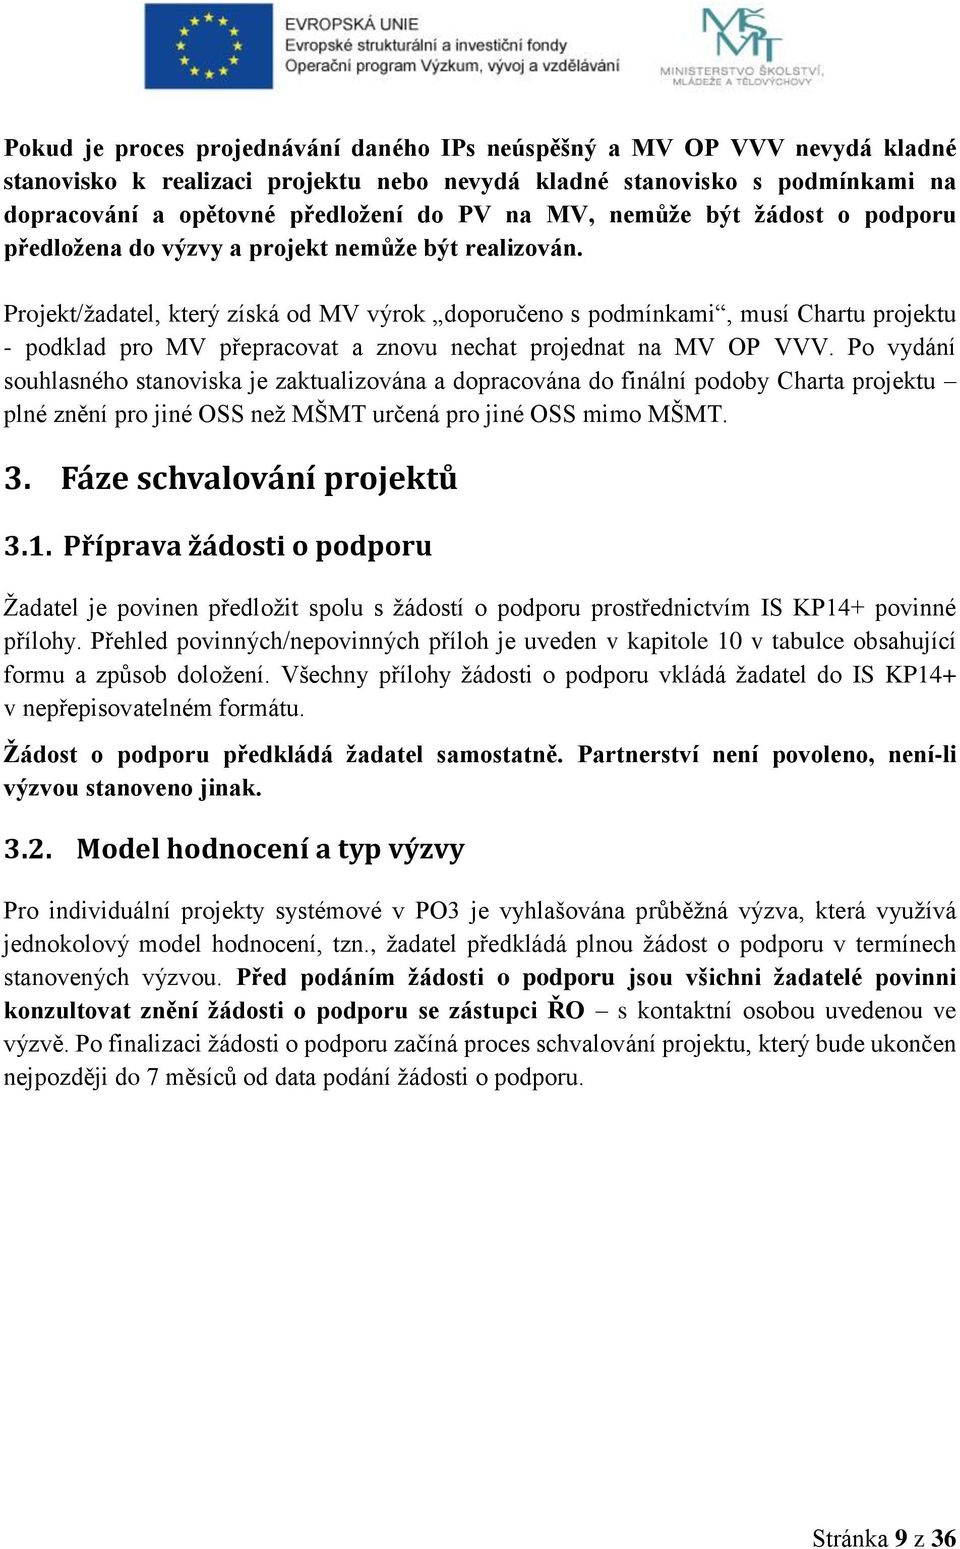 Projekt/žadatel, který získá od MV výrok doporučeno s podmínkami, musí Chartu projektu - podklad pro MV přepracovat a znovu nechat projednat na MV OP VVV.